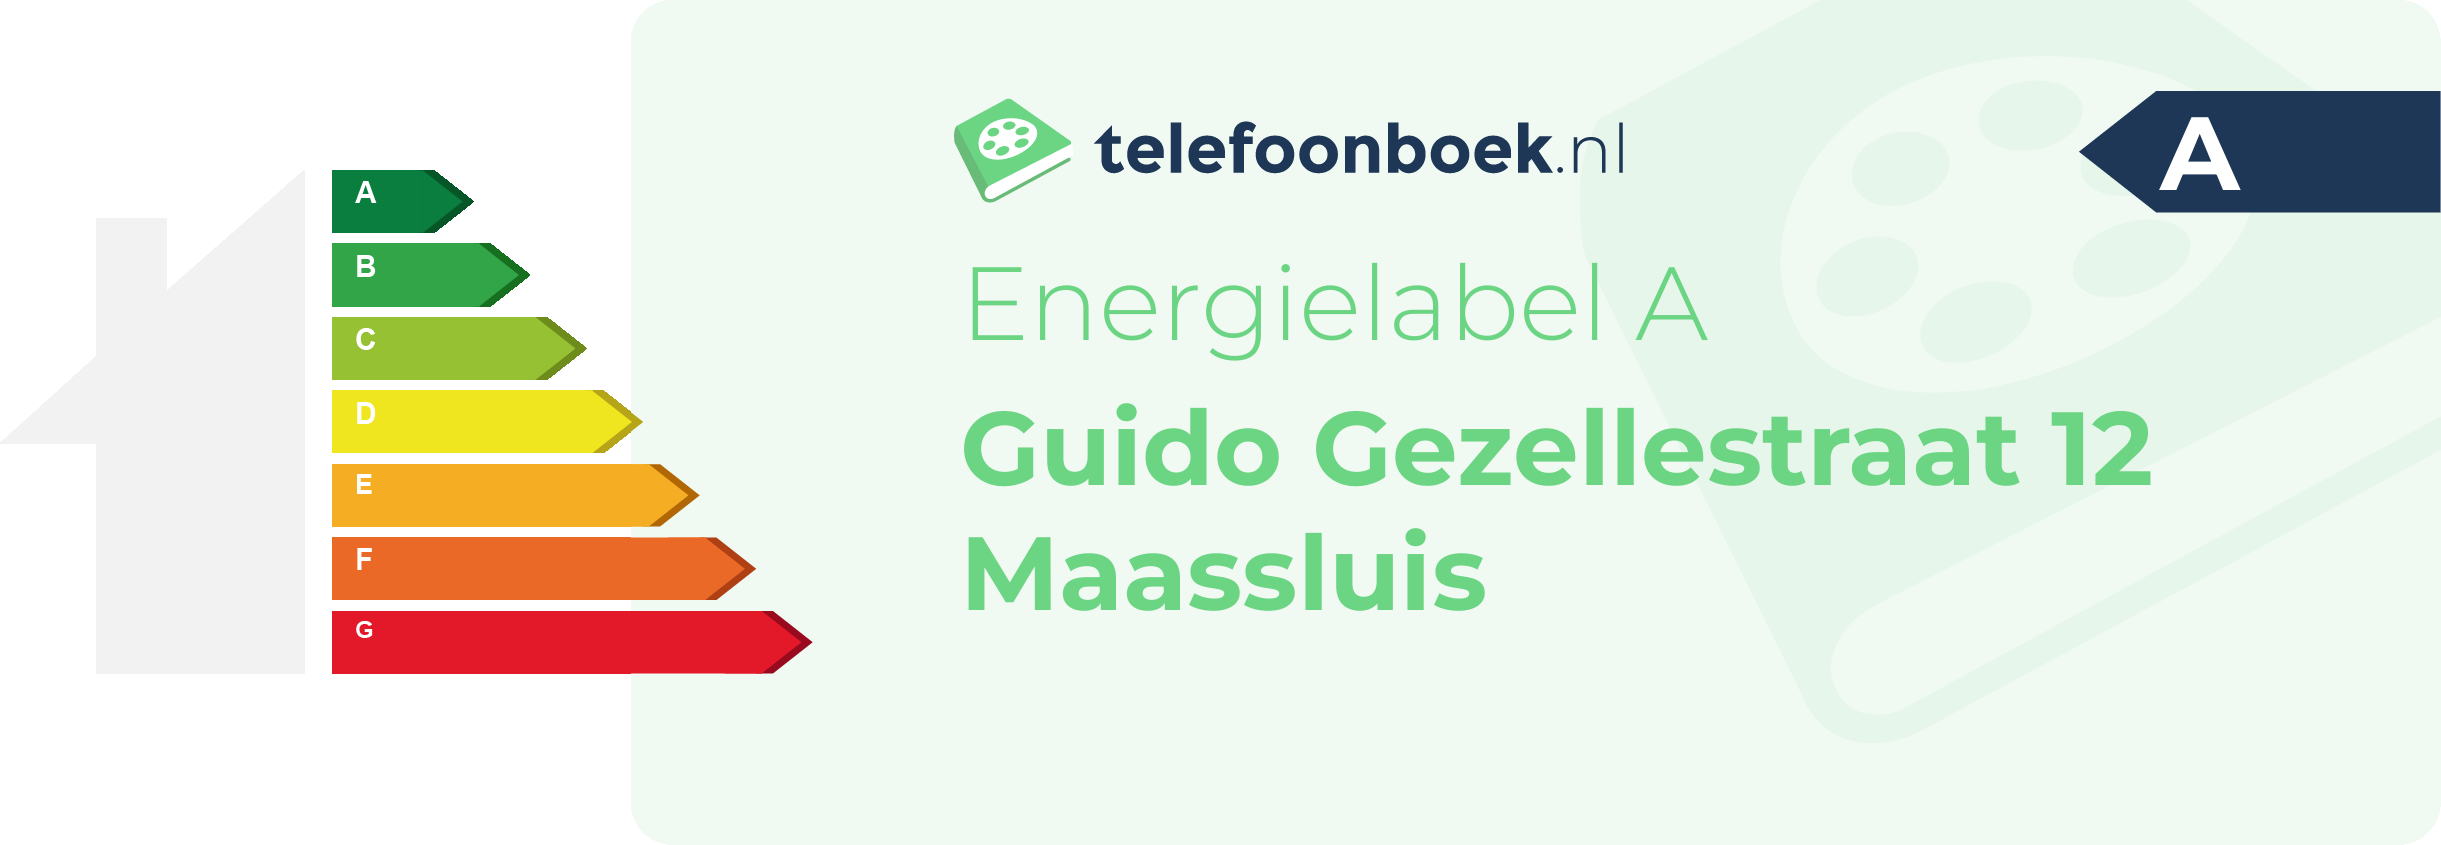 Energielabel Guido Gezellestraat 12 Maassluis